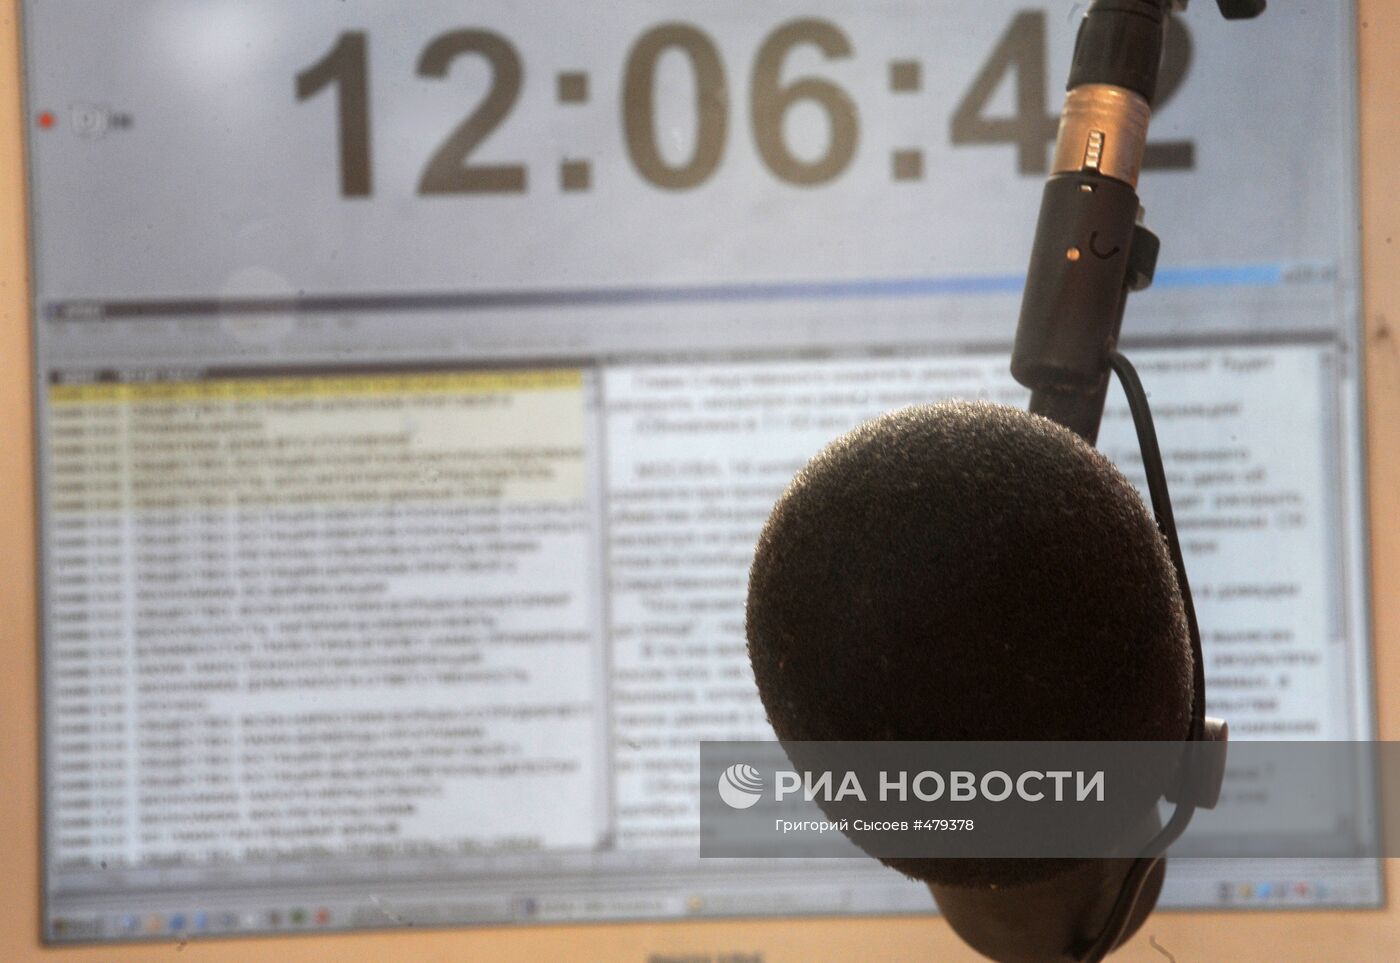 Работа радиостанции "Голос России"